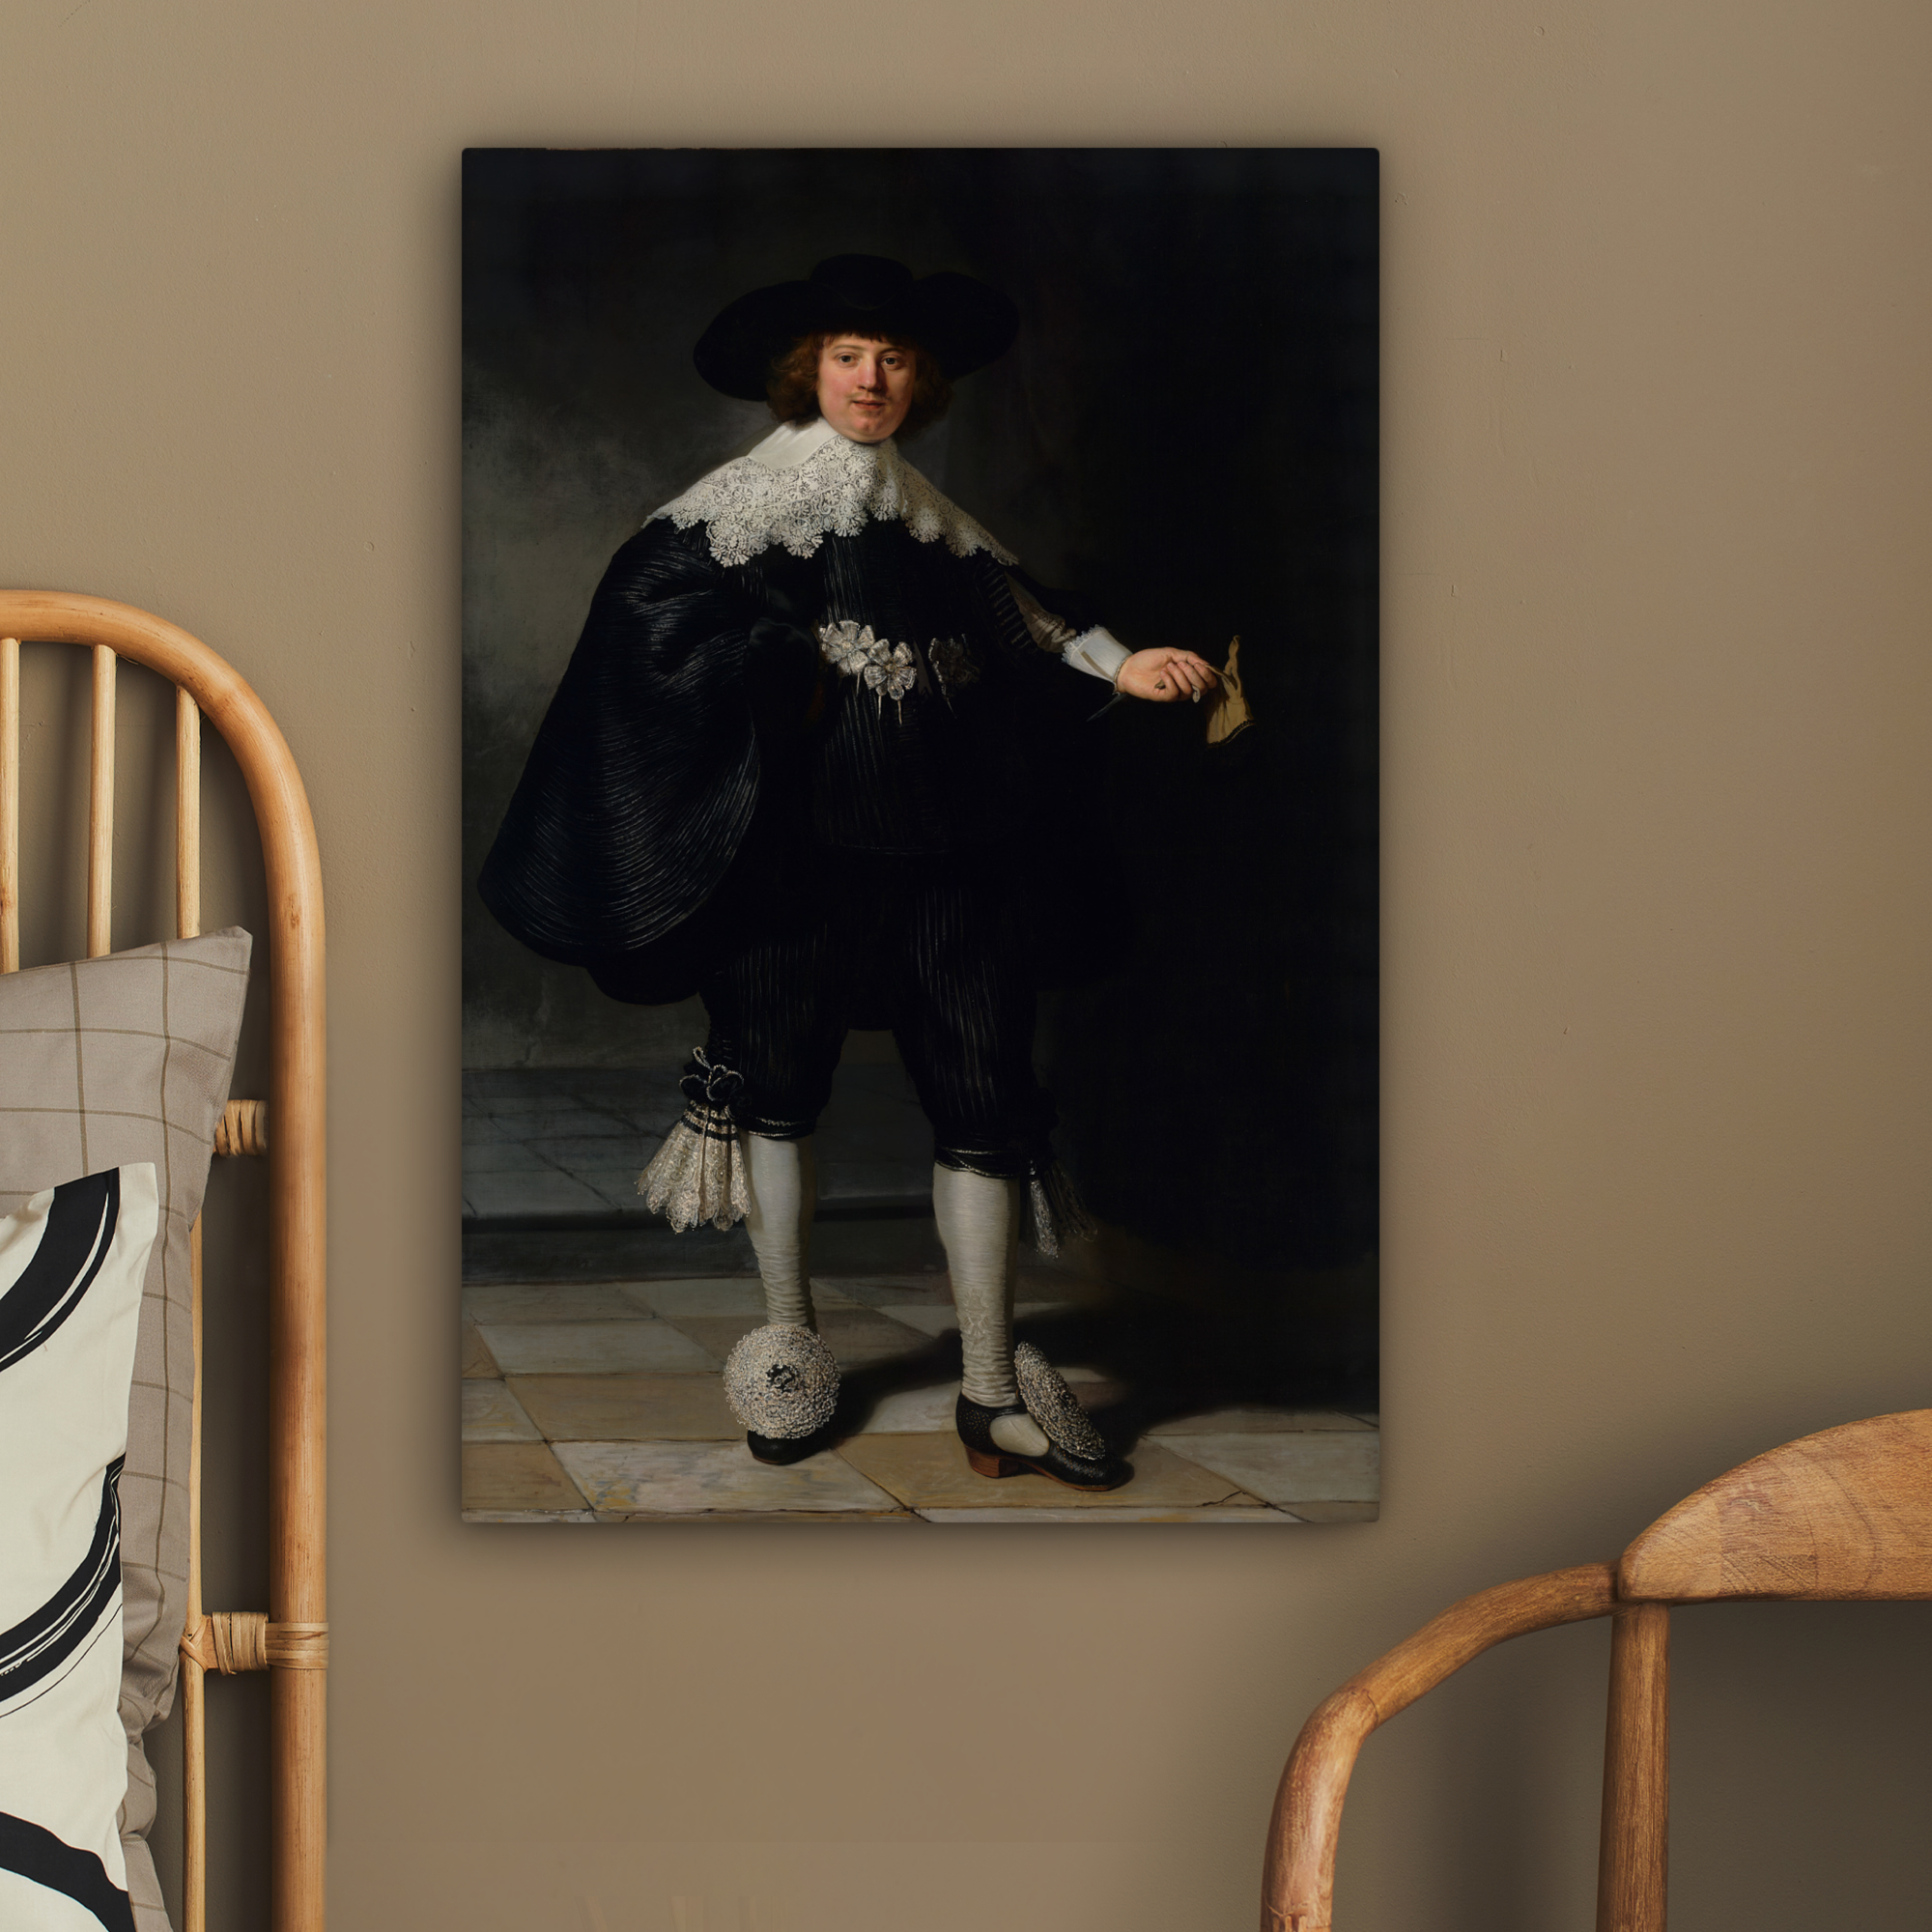 Tableau sur toile - Le portrait de mariage de Marten Soolmans - Rembrandt van Rijn-2